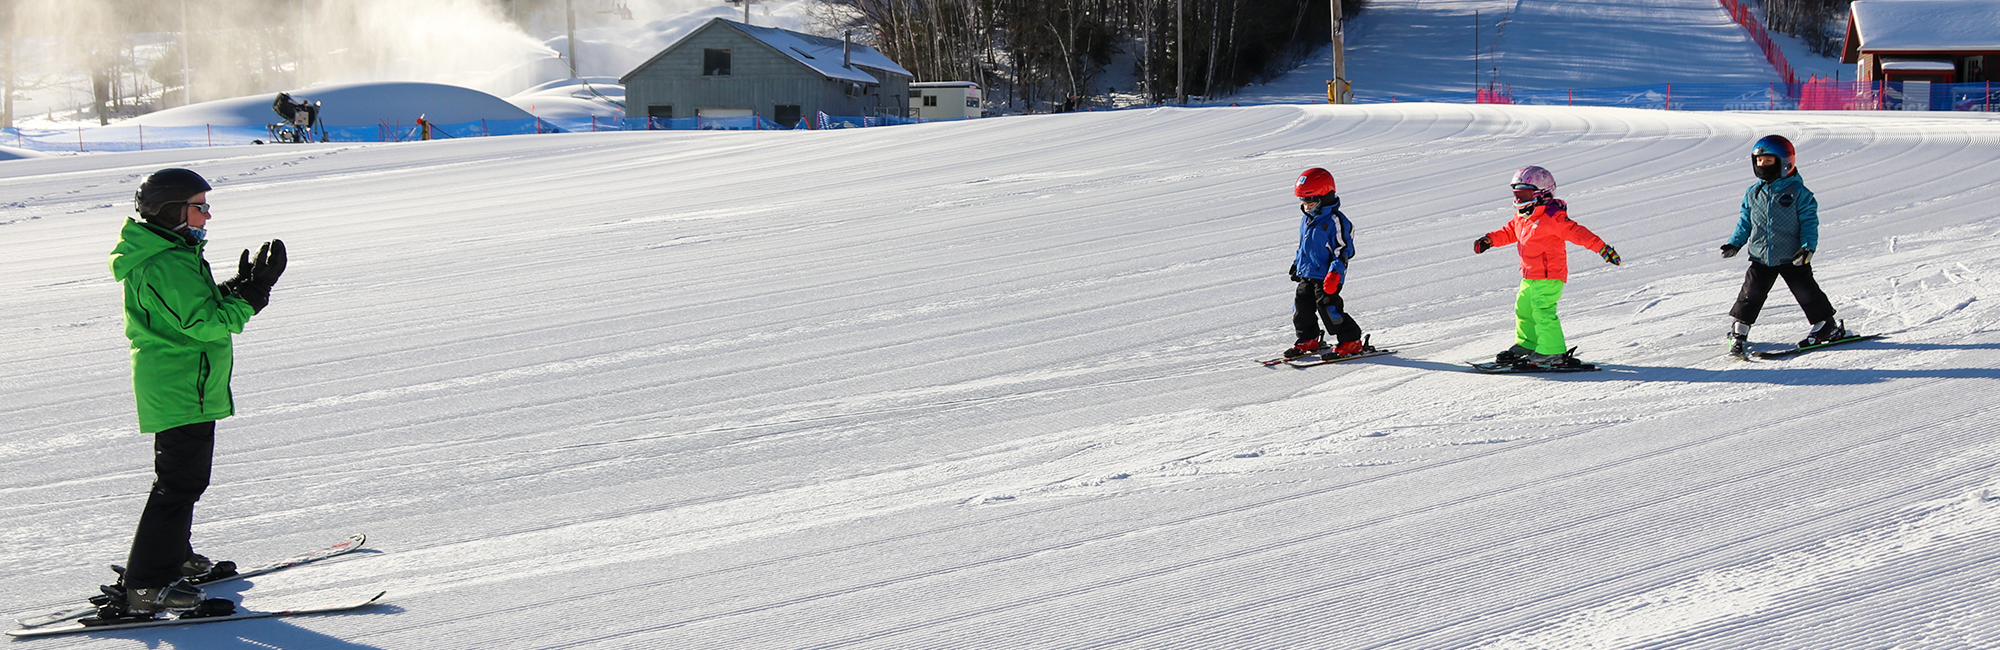 Kids Ski Lesson